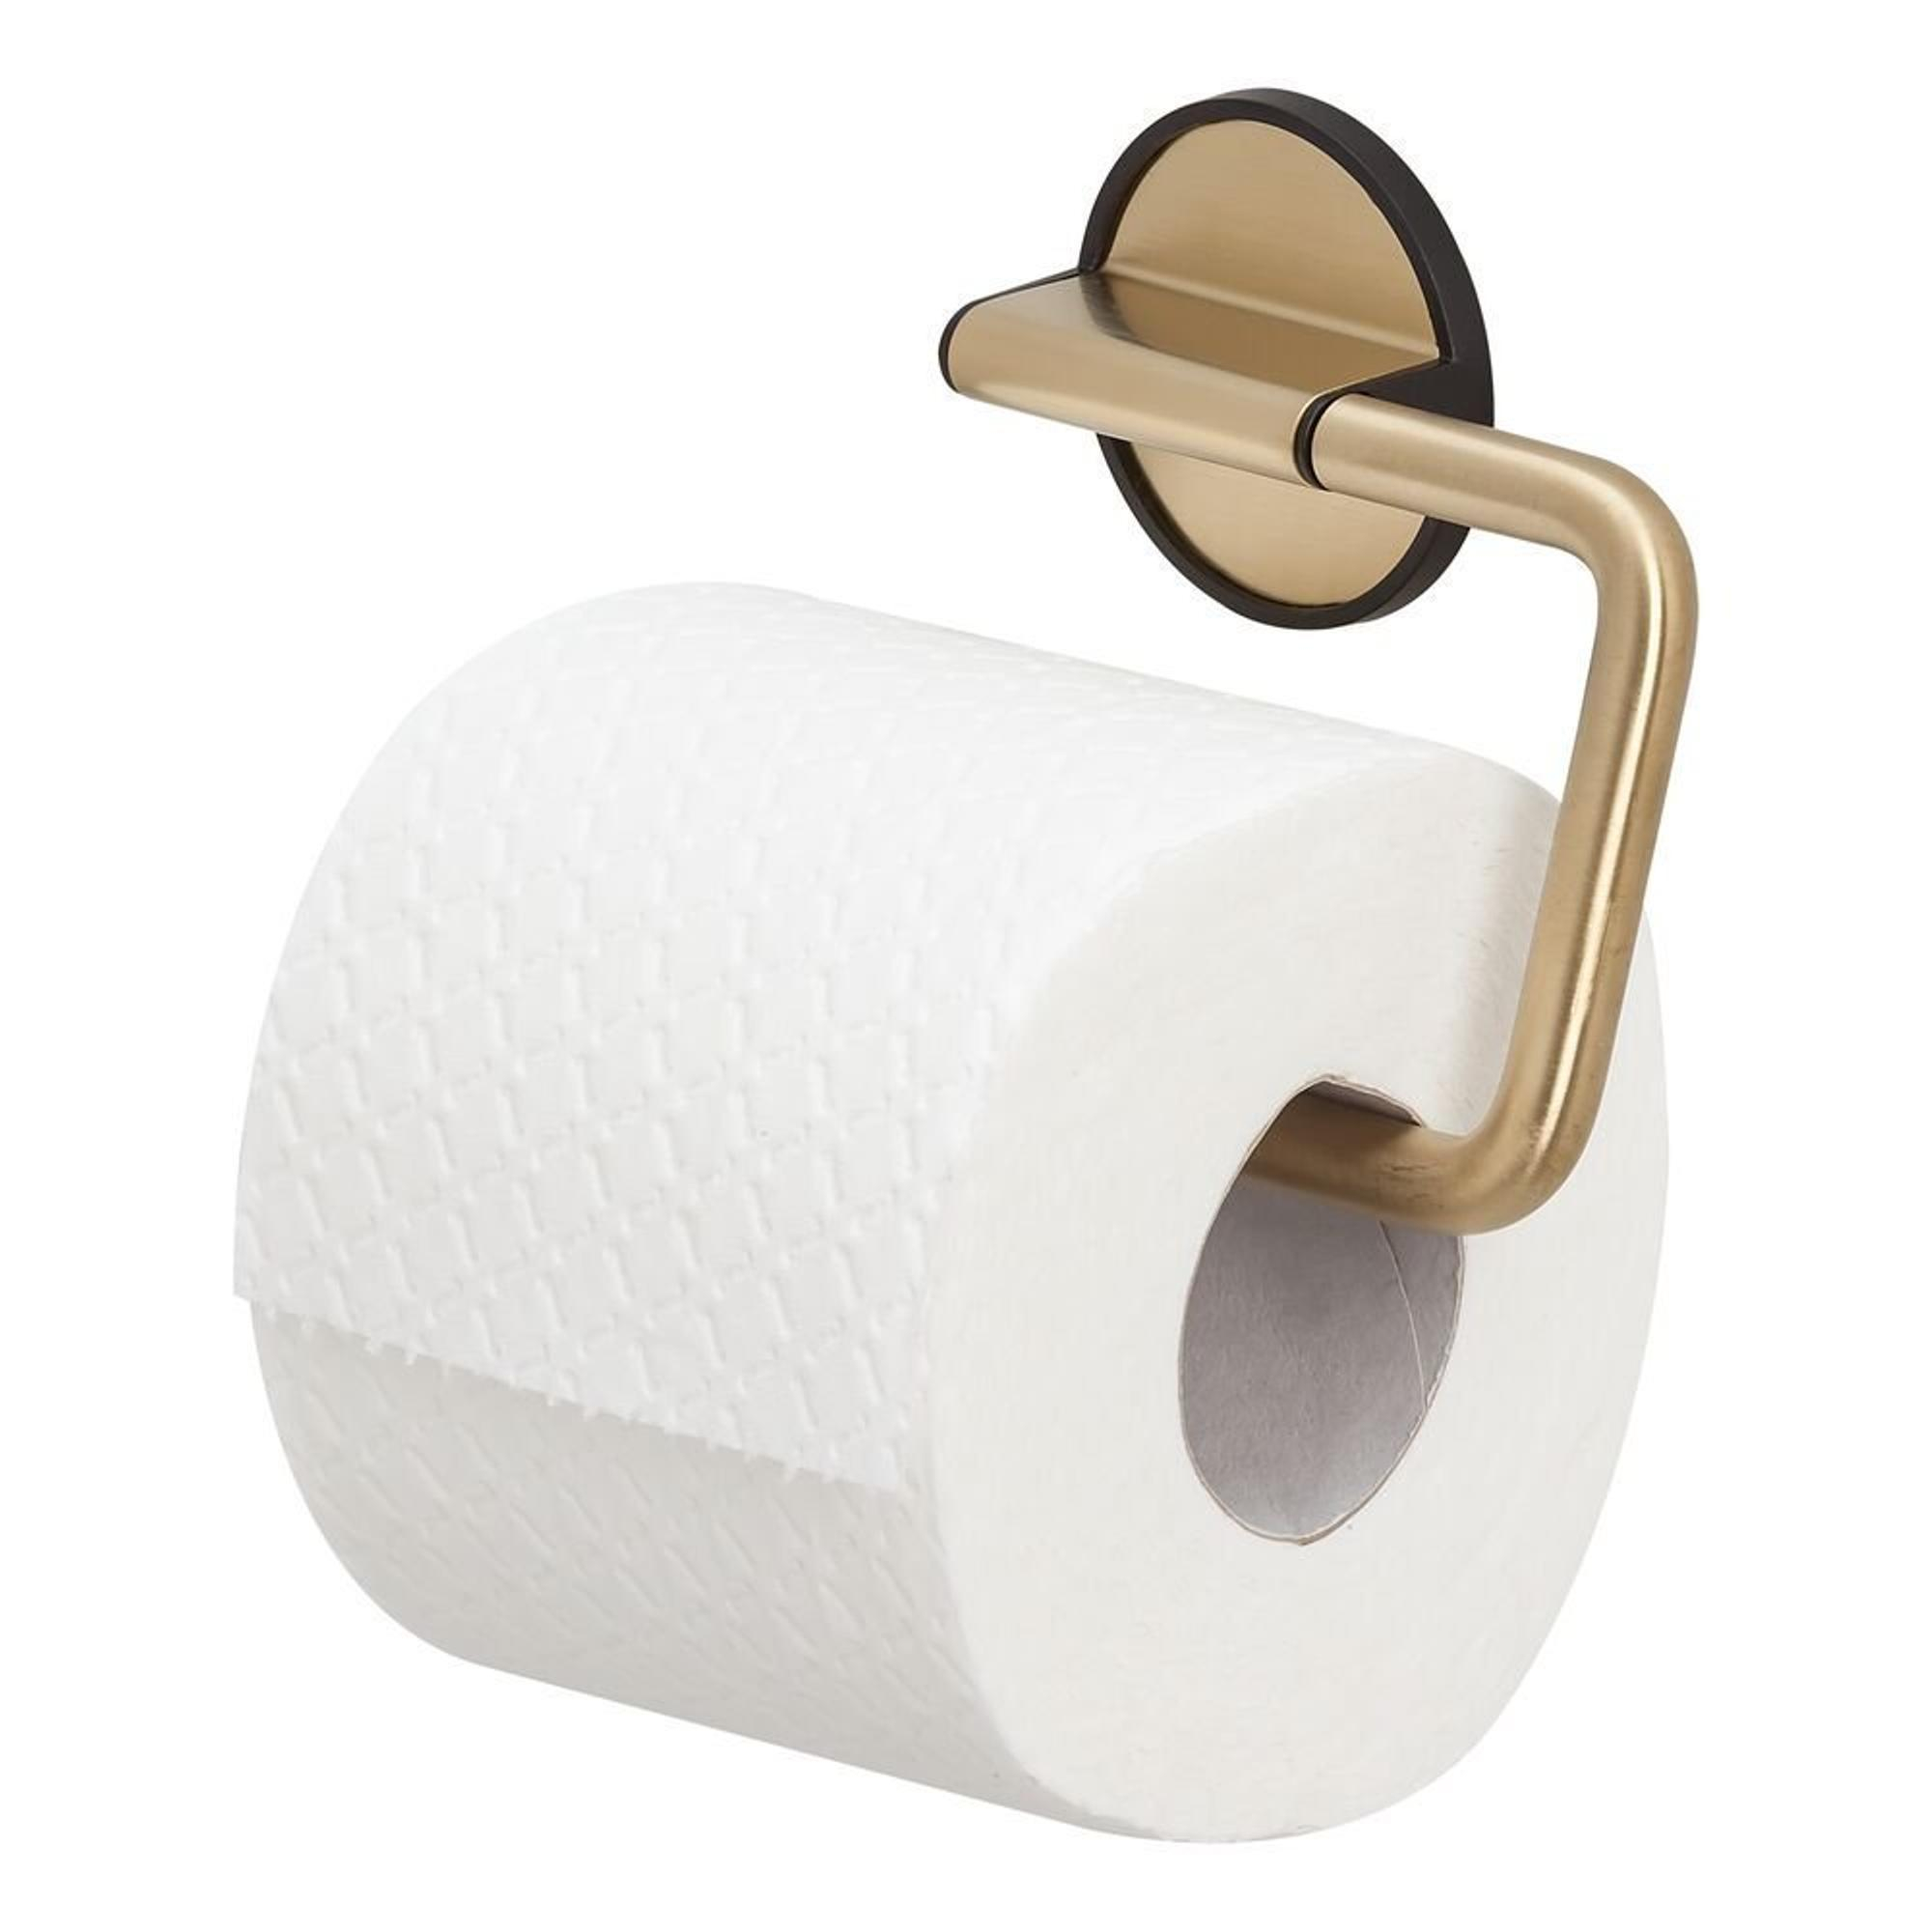 Tiger - Tiger Tune Ensemble d'accessoires de toilettes - Brosse WC avec  support - Porte-rouleau papier toilette sans rabat - Crochet  porte-serviette - Laiton brossé / Noir